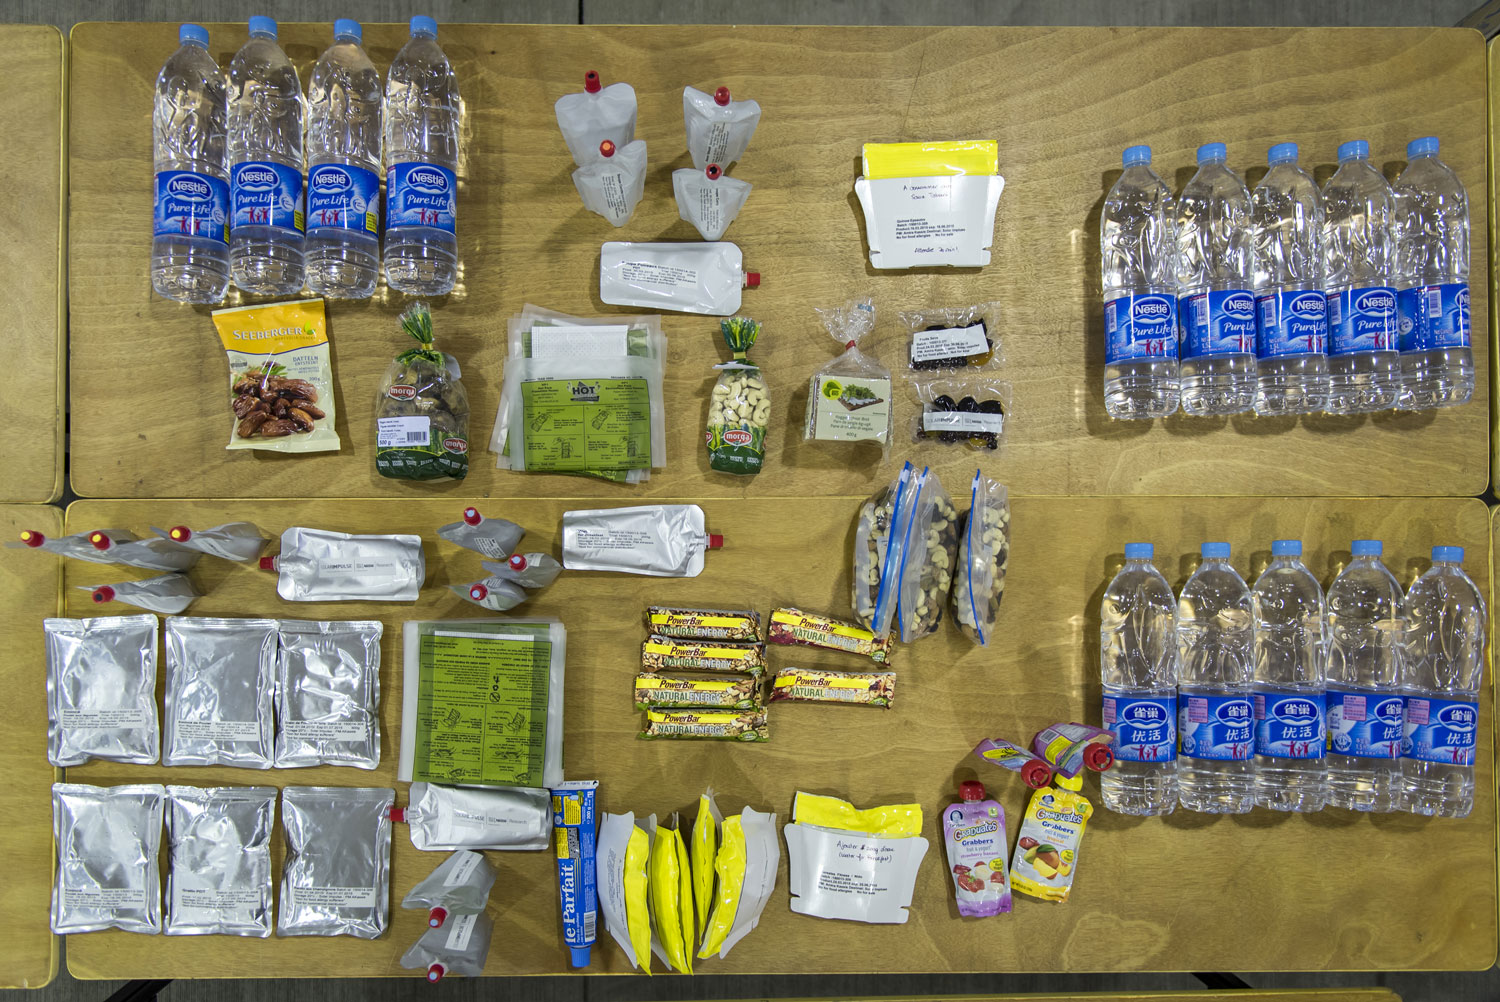 Voici la nourriture emportée par André BORSCHBERG en décollant de Chine pour aller vers le Japon © Solar Impulse